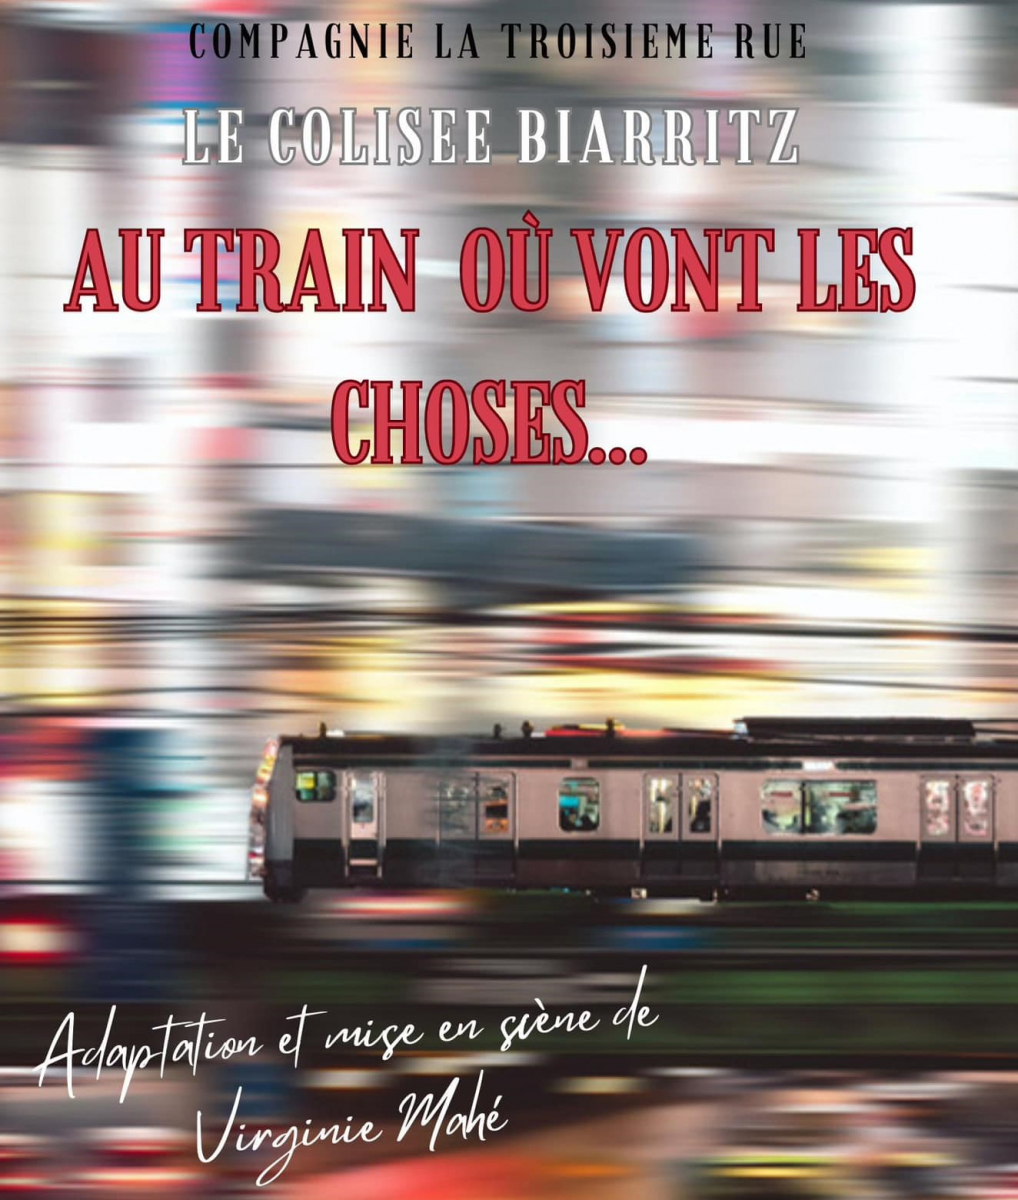 Biarritz : spectacle "Au train où vont les choses" au Colisée